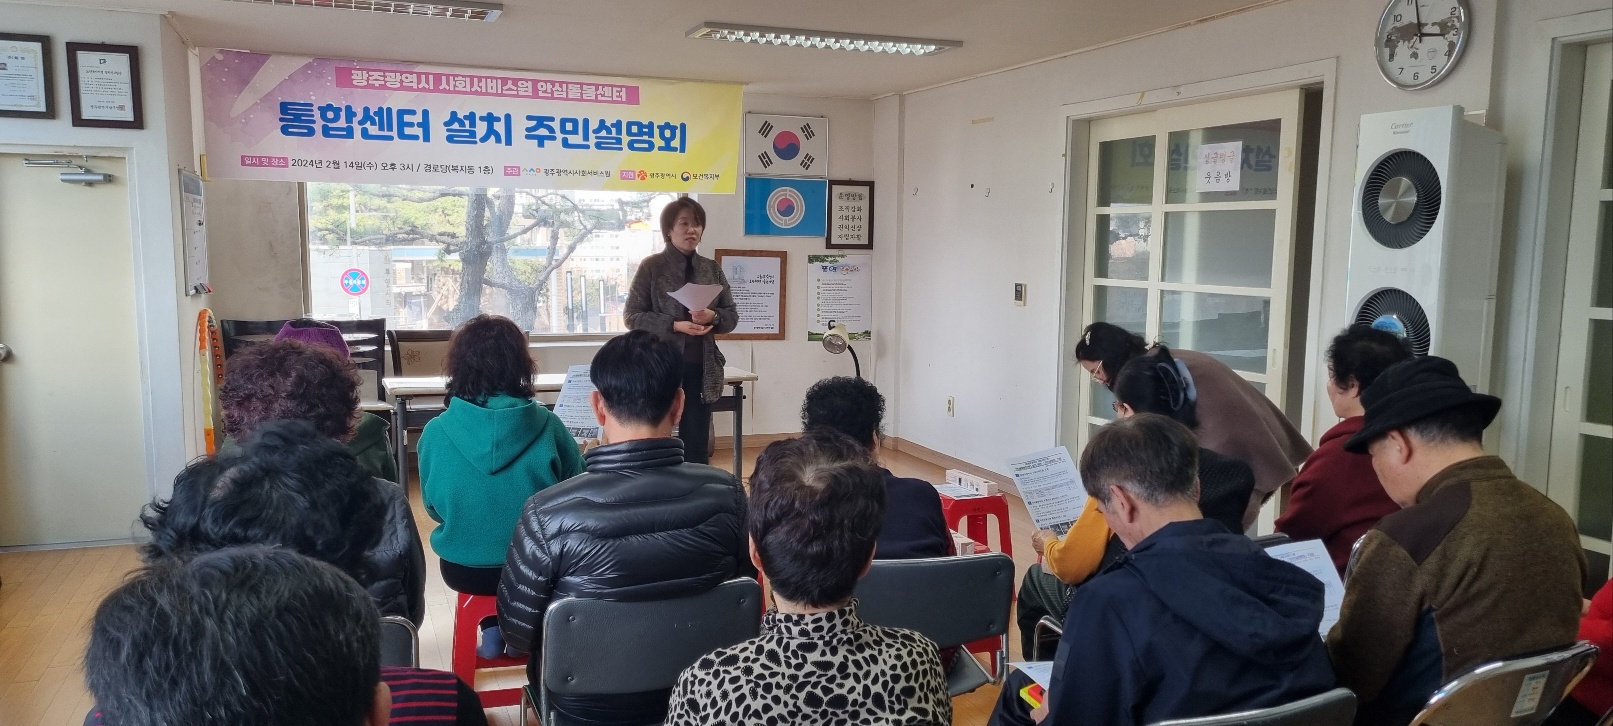 안심돌봄센터 통합센터 설치 관련 주민설명회 개최(24.2.14.) 썸네일 이미지